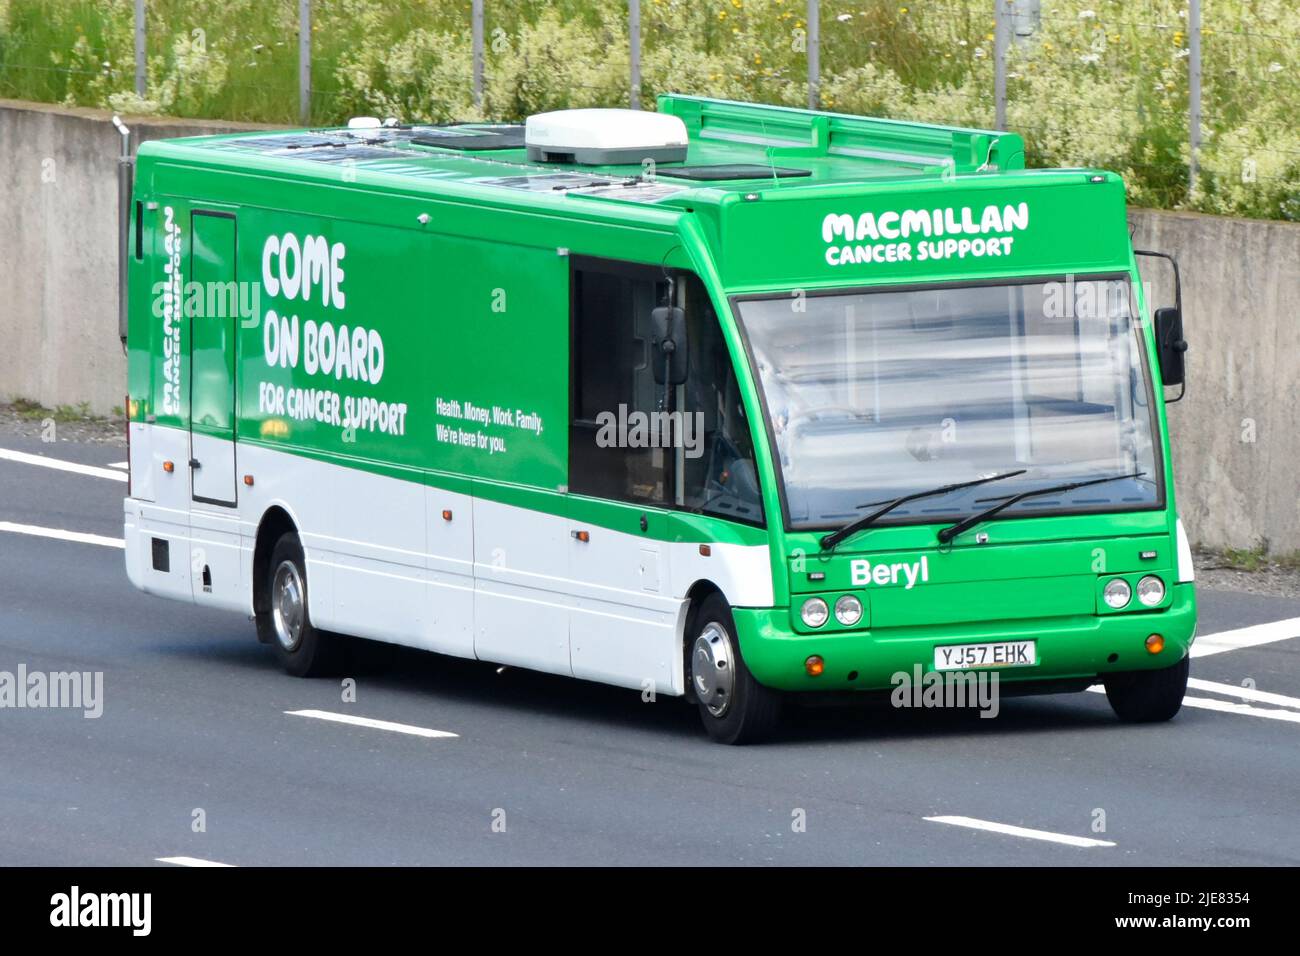 El cáncer de Macmillan caridad y apoyo de un móvil de viaje 'Come On Board' autobús de exposición de ayuda en la marca verde de conducción en el Reino Unido carretera autopista Foto de stock